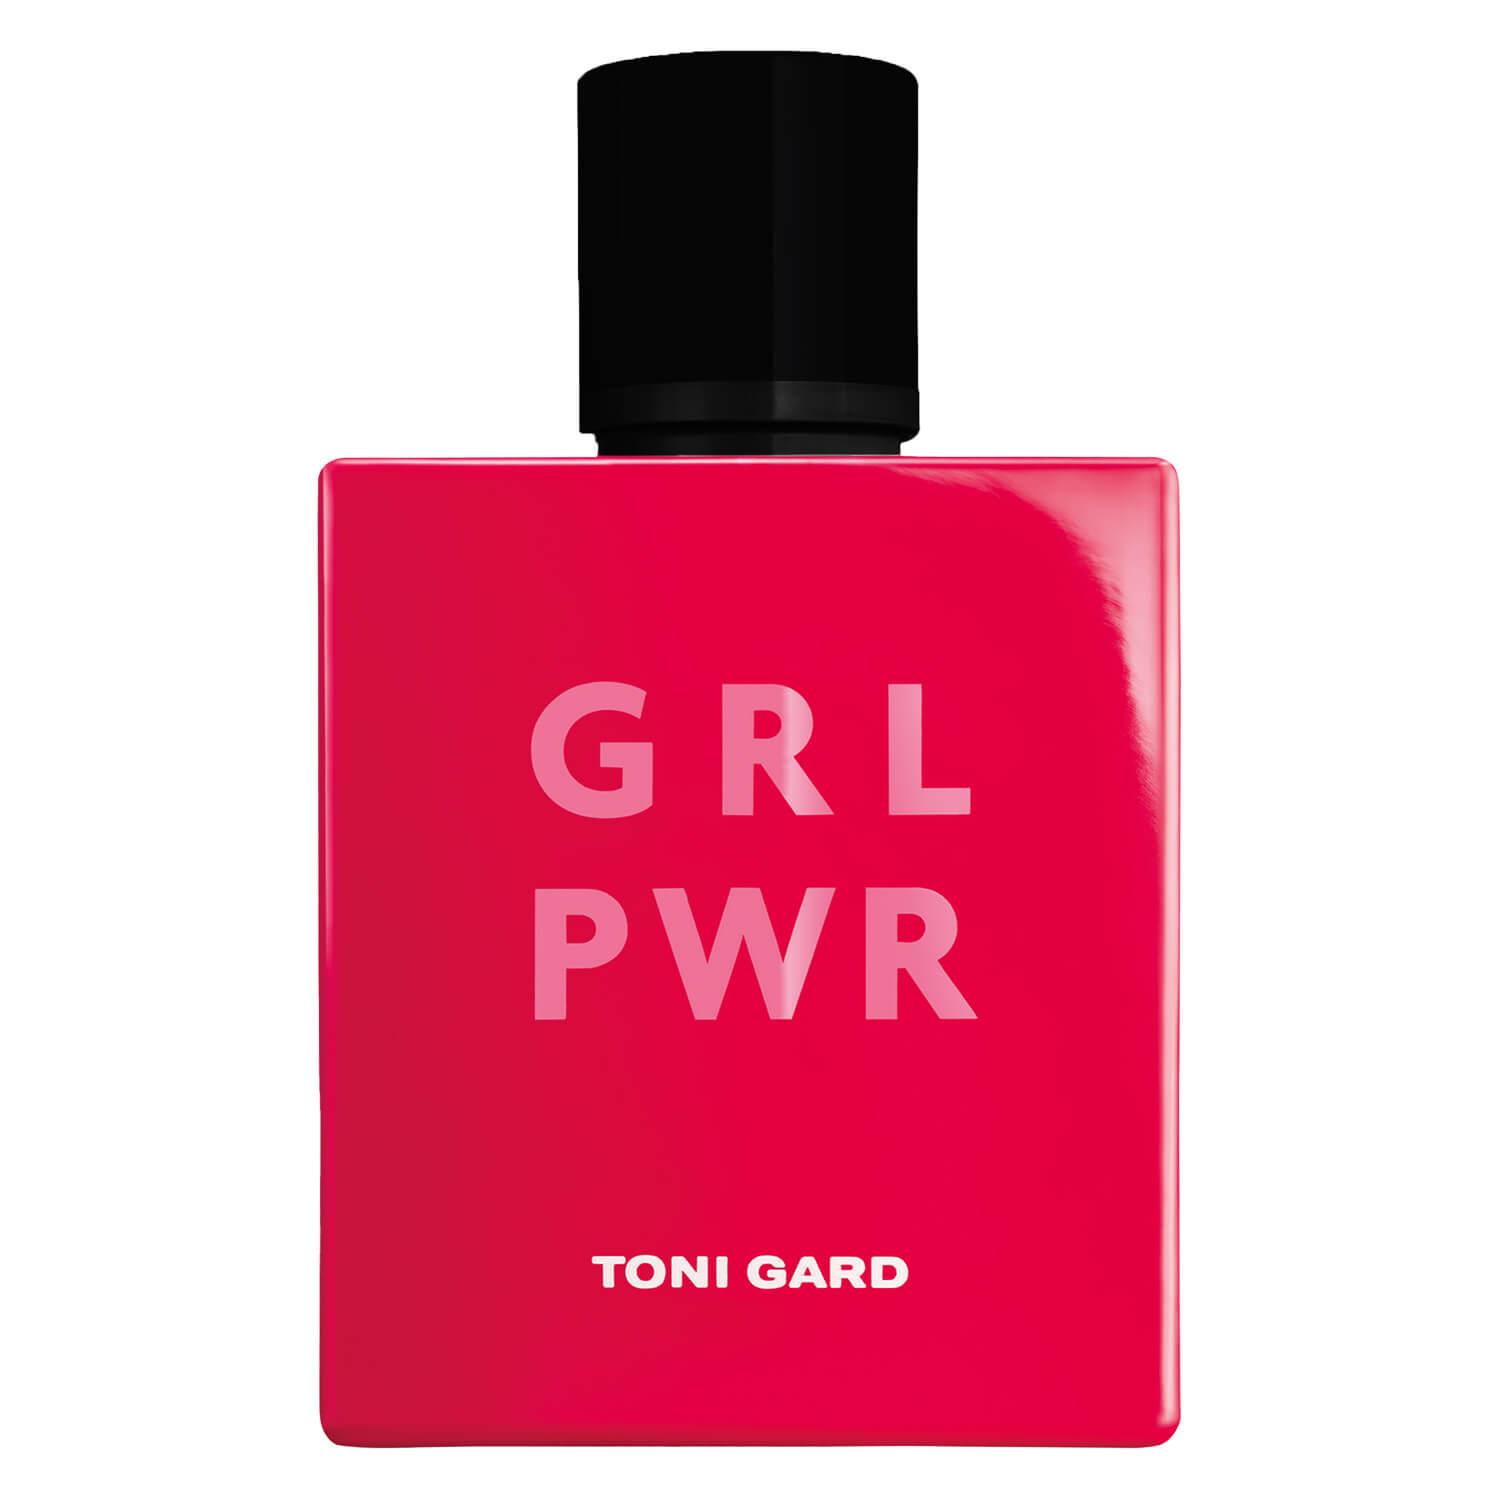 TONI GARD - GRL PWR Eau de Parfum